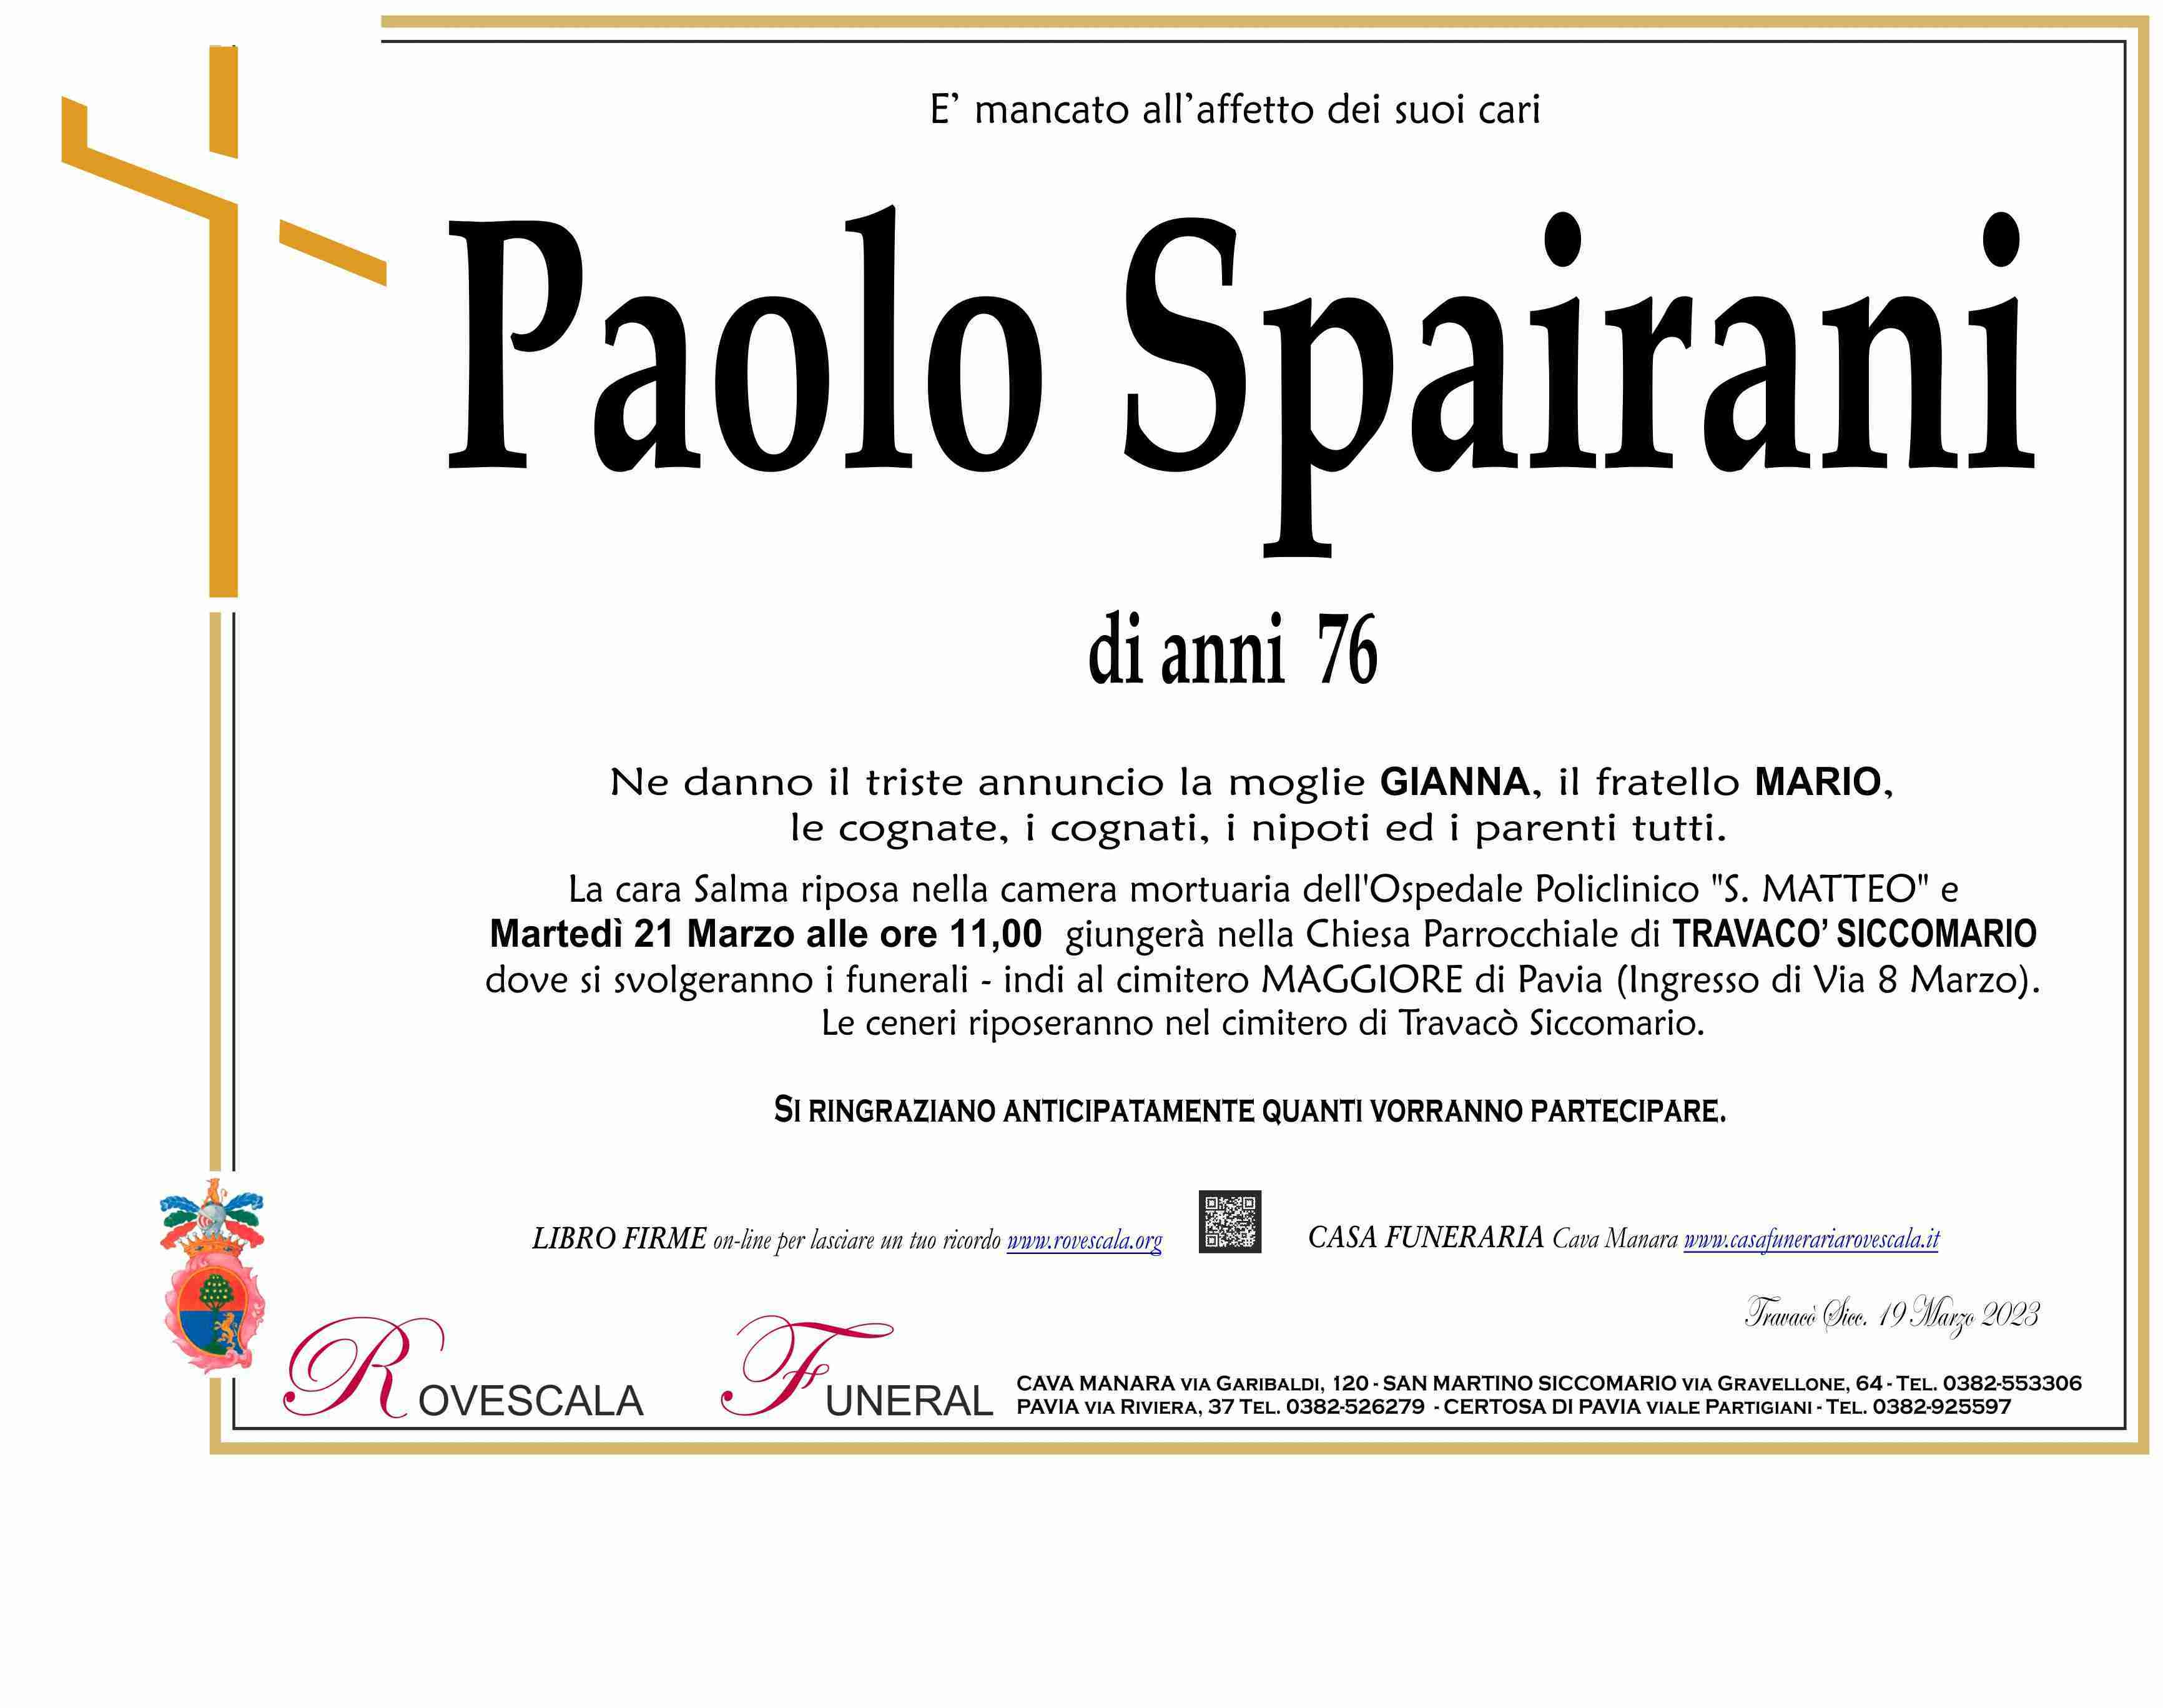 Paolo Rino Spairani